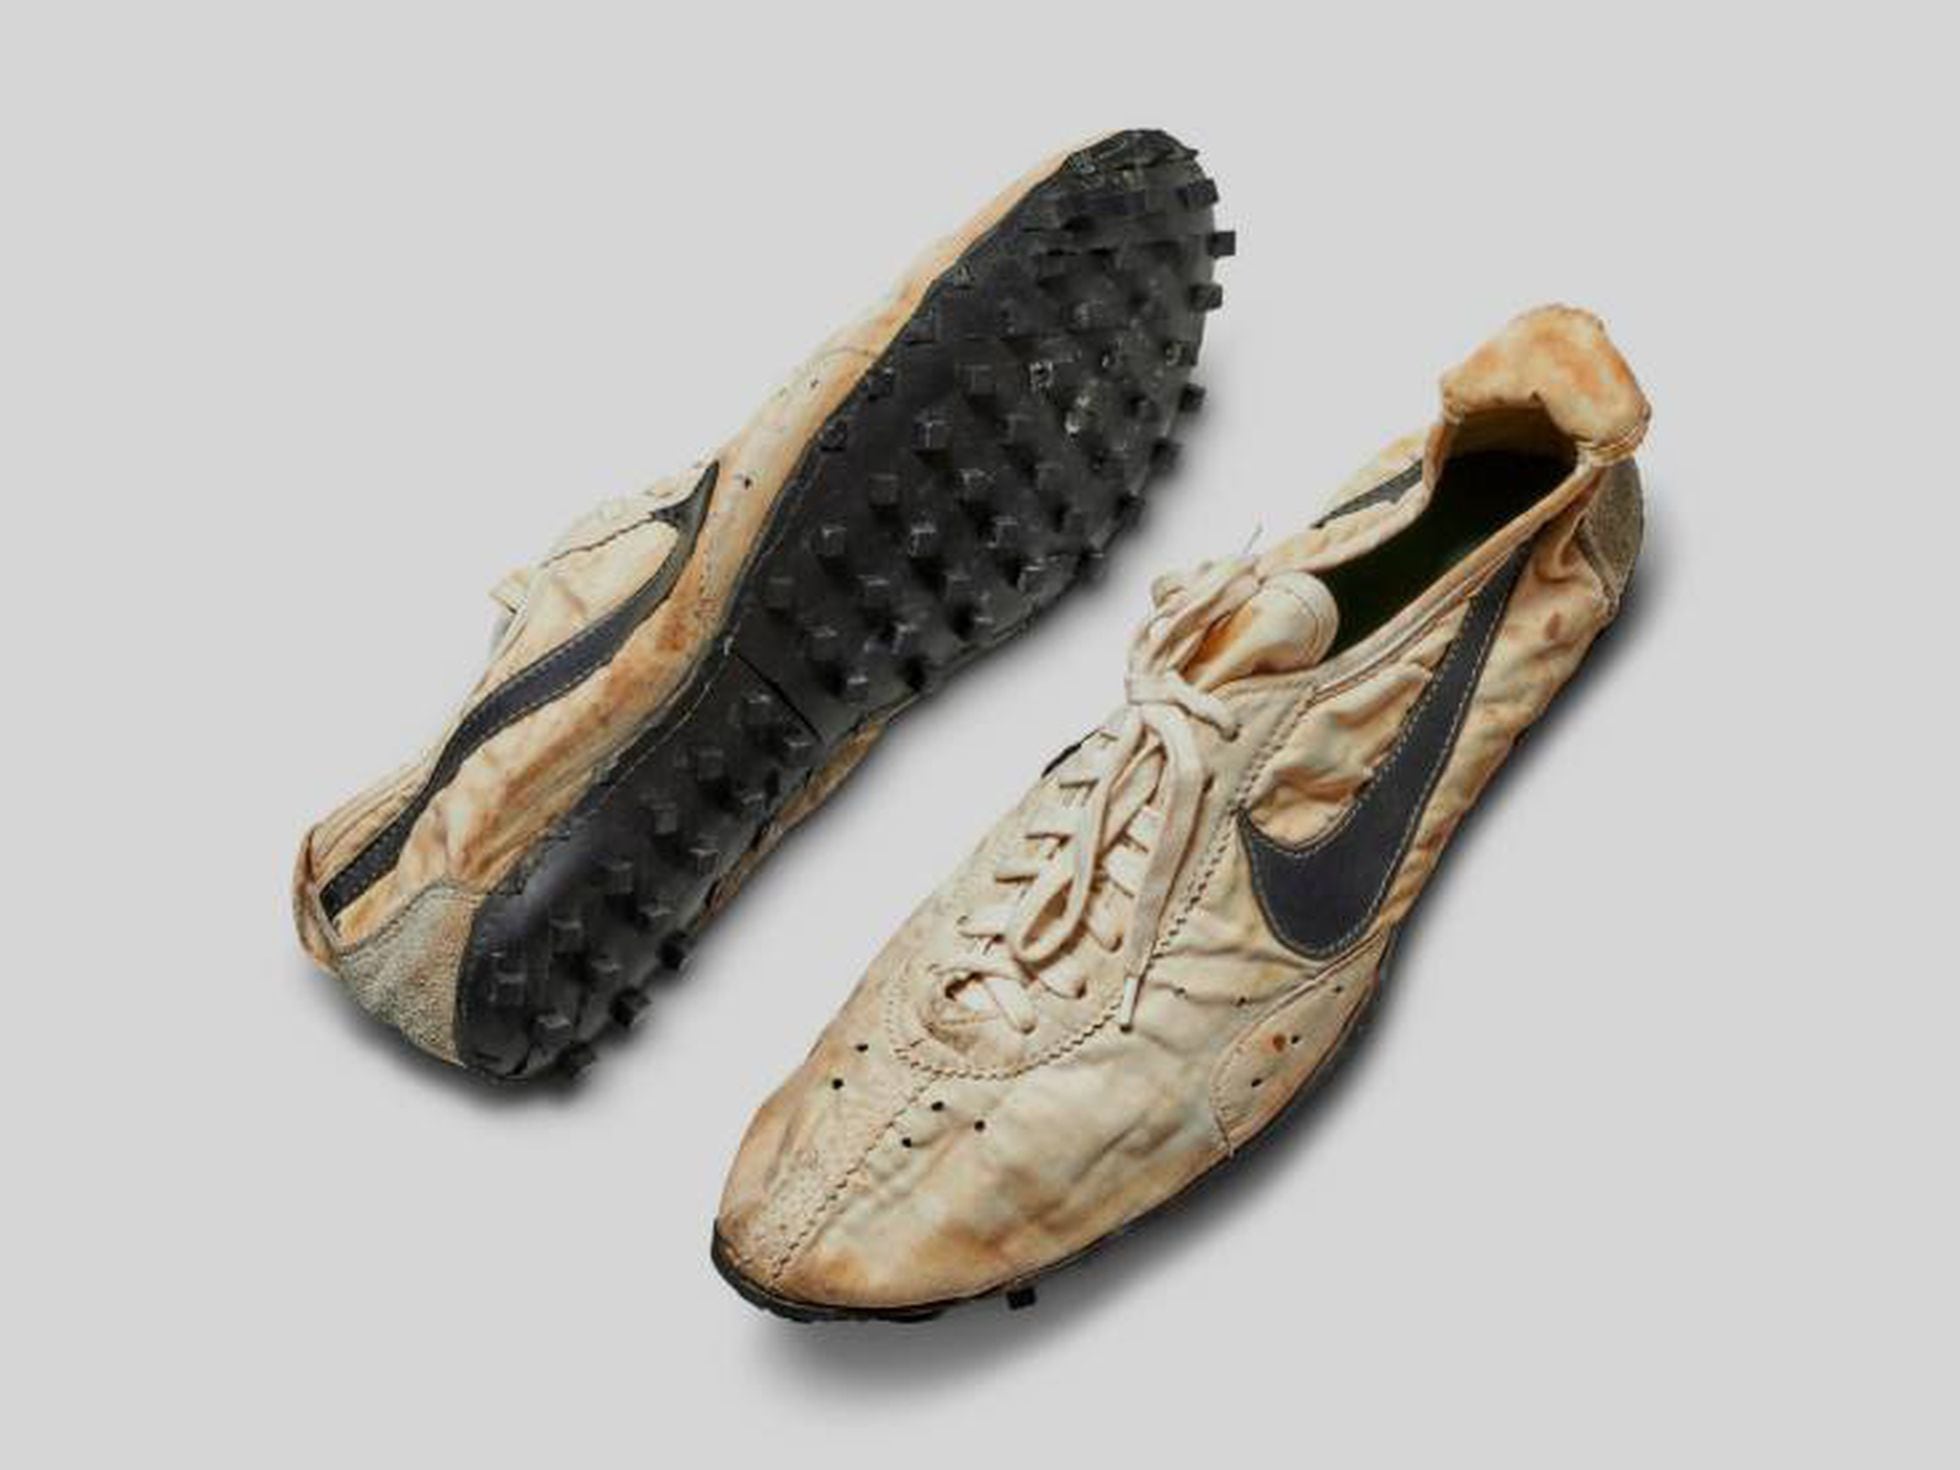 ingresos Evolucionar comentarista Un empresario canadiense paga 437.000 dólares por unas viejas zapatillas  Nike, récord histórico | Economía | EL PAÍS